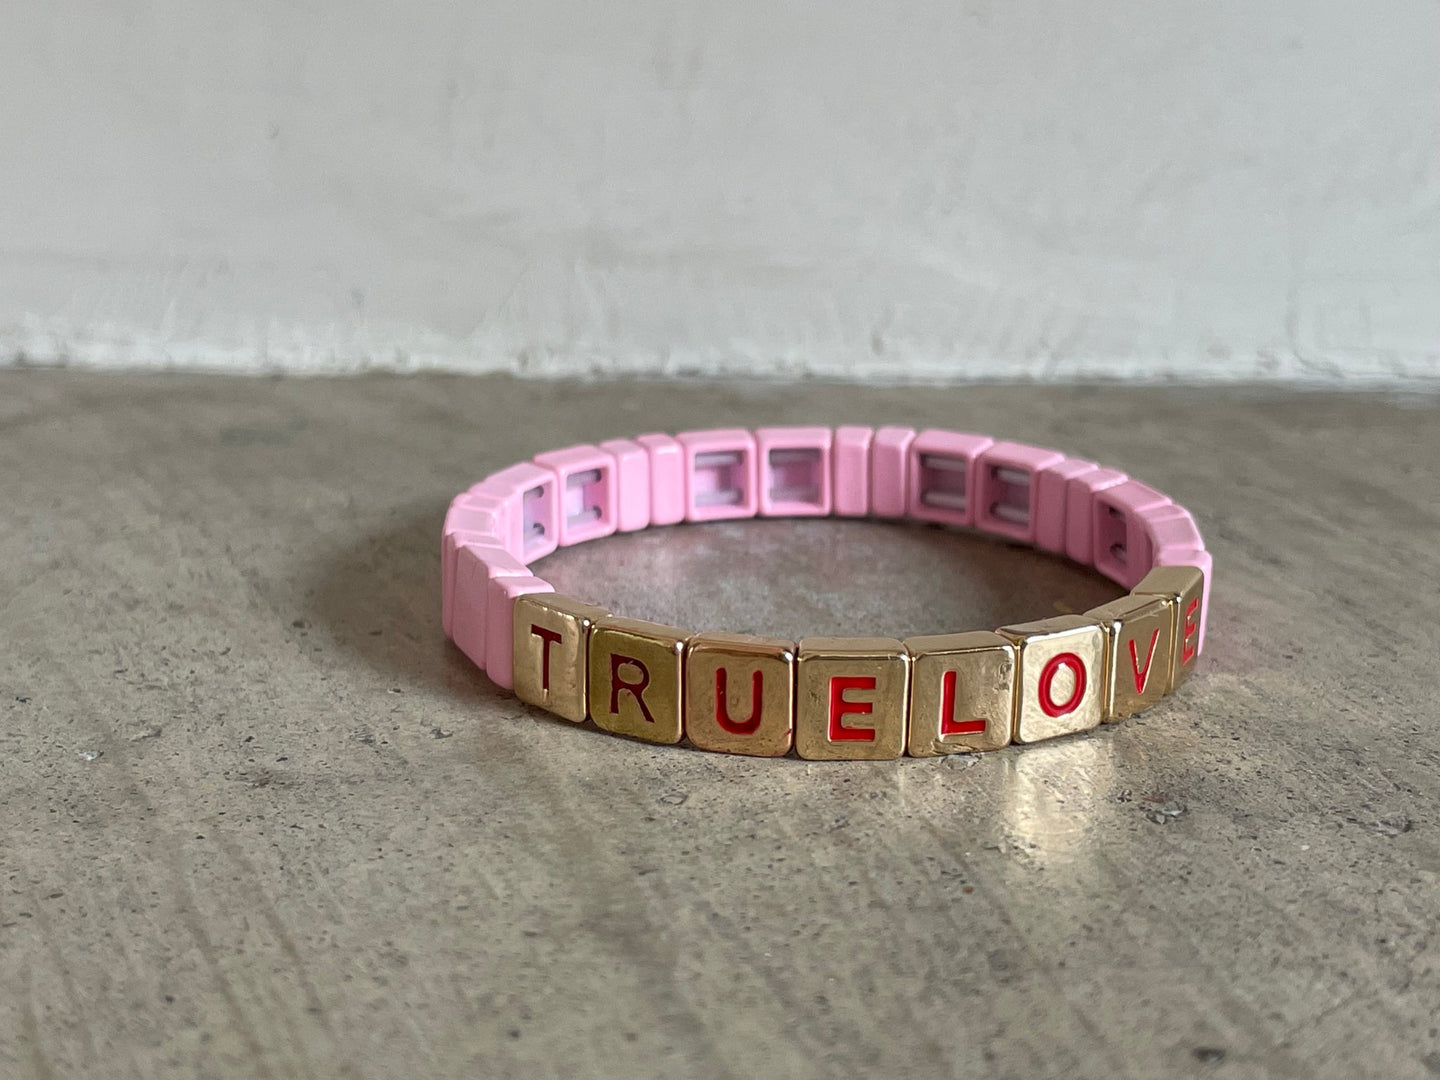 True love bracelet